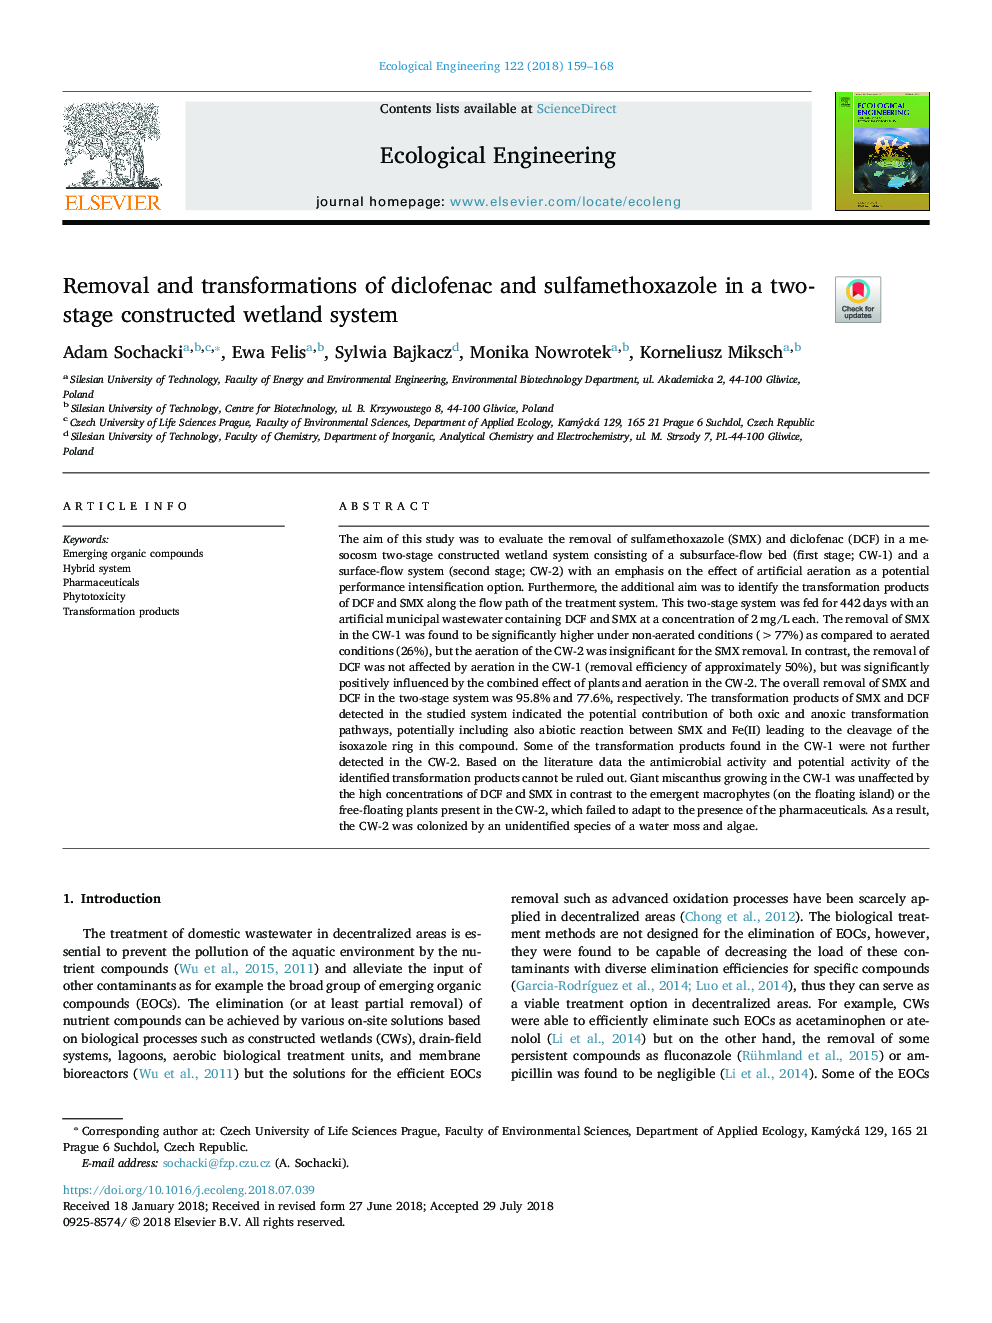 حذف و تحولات دیکلوفناک و سولفامتوکسازول در یک سیستم دو مرحله ای تالاب 